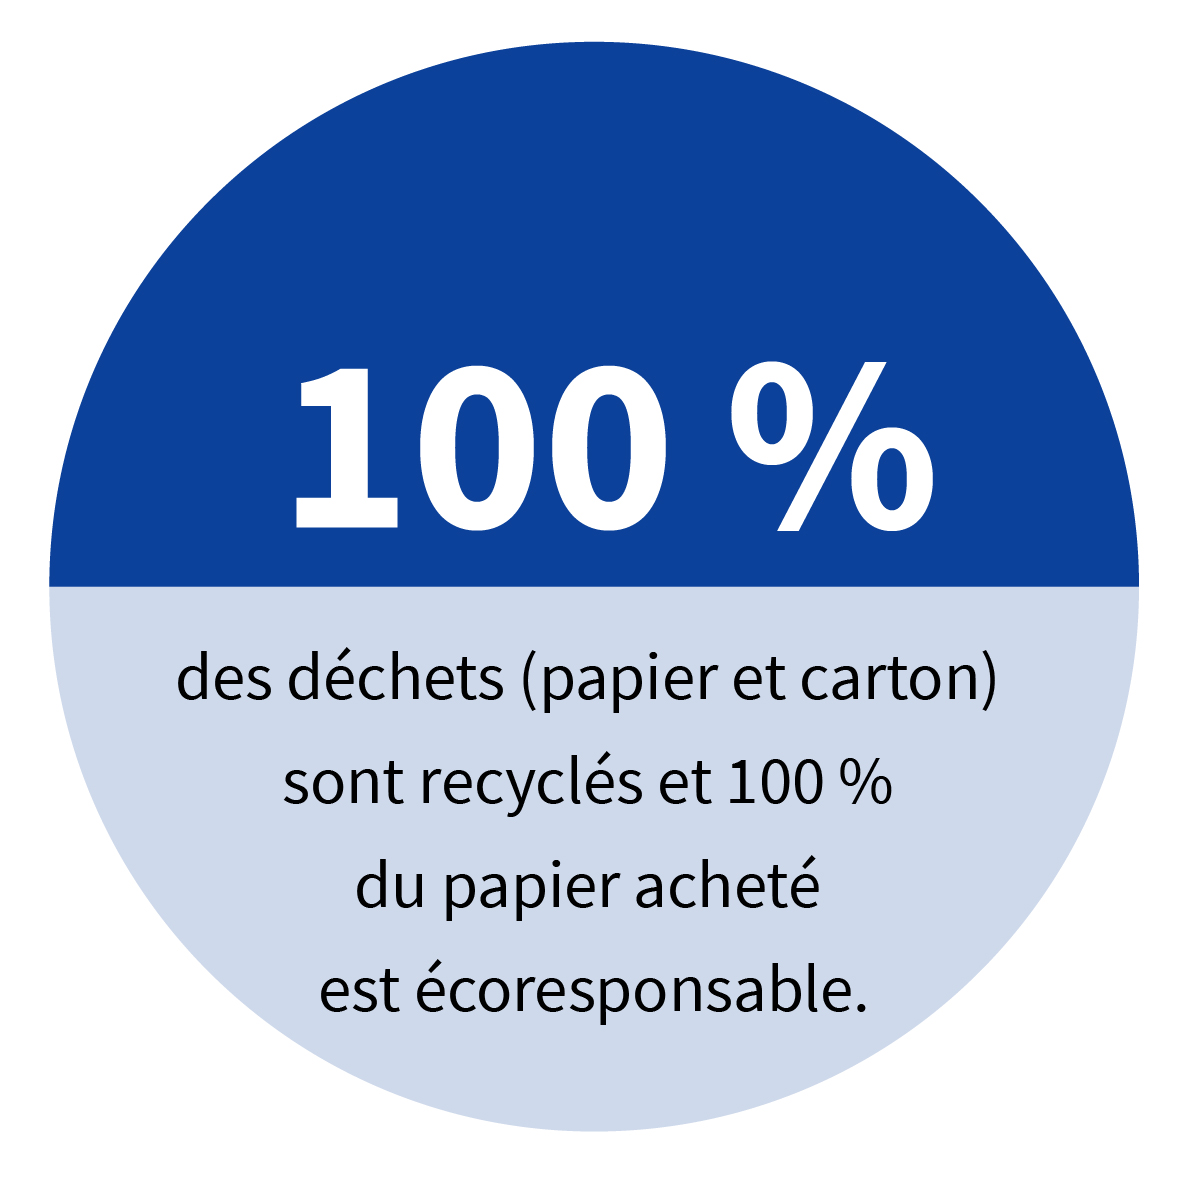 100 % des déchets (papier et carton) sont recyclés et 100 % du papier acheté est écoresponsable.